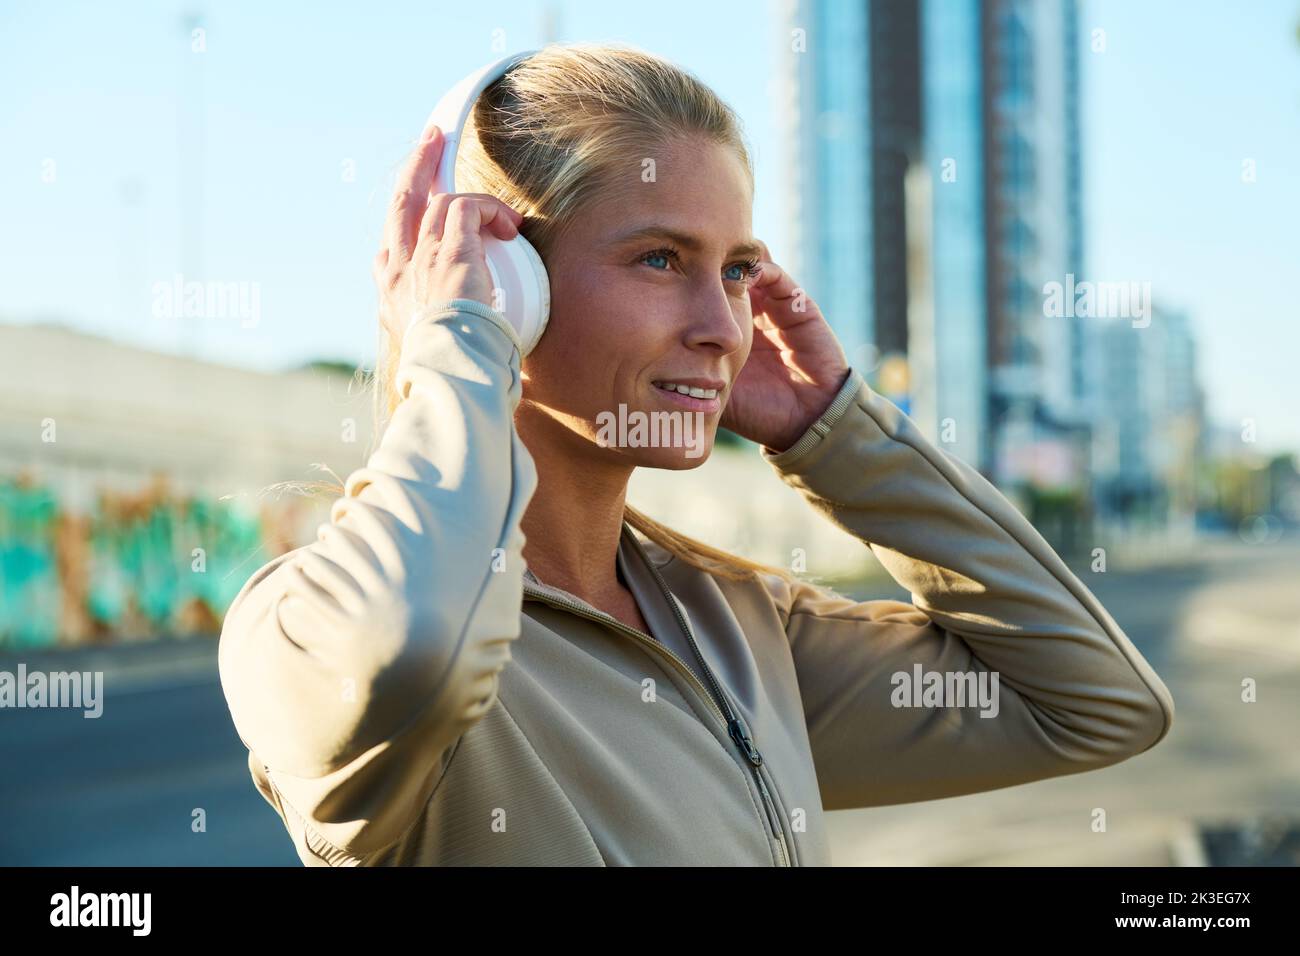 Seitenansicht einer glücklichen jungen blonden Sportlerin, die Kopfhörer auf ihrem Kopf berührt, während sie Musik in einer urbanen Umgebung hört Stockfoto